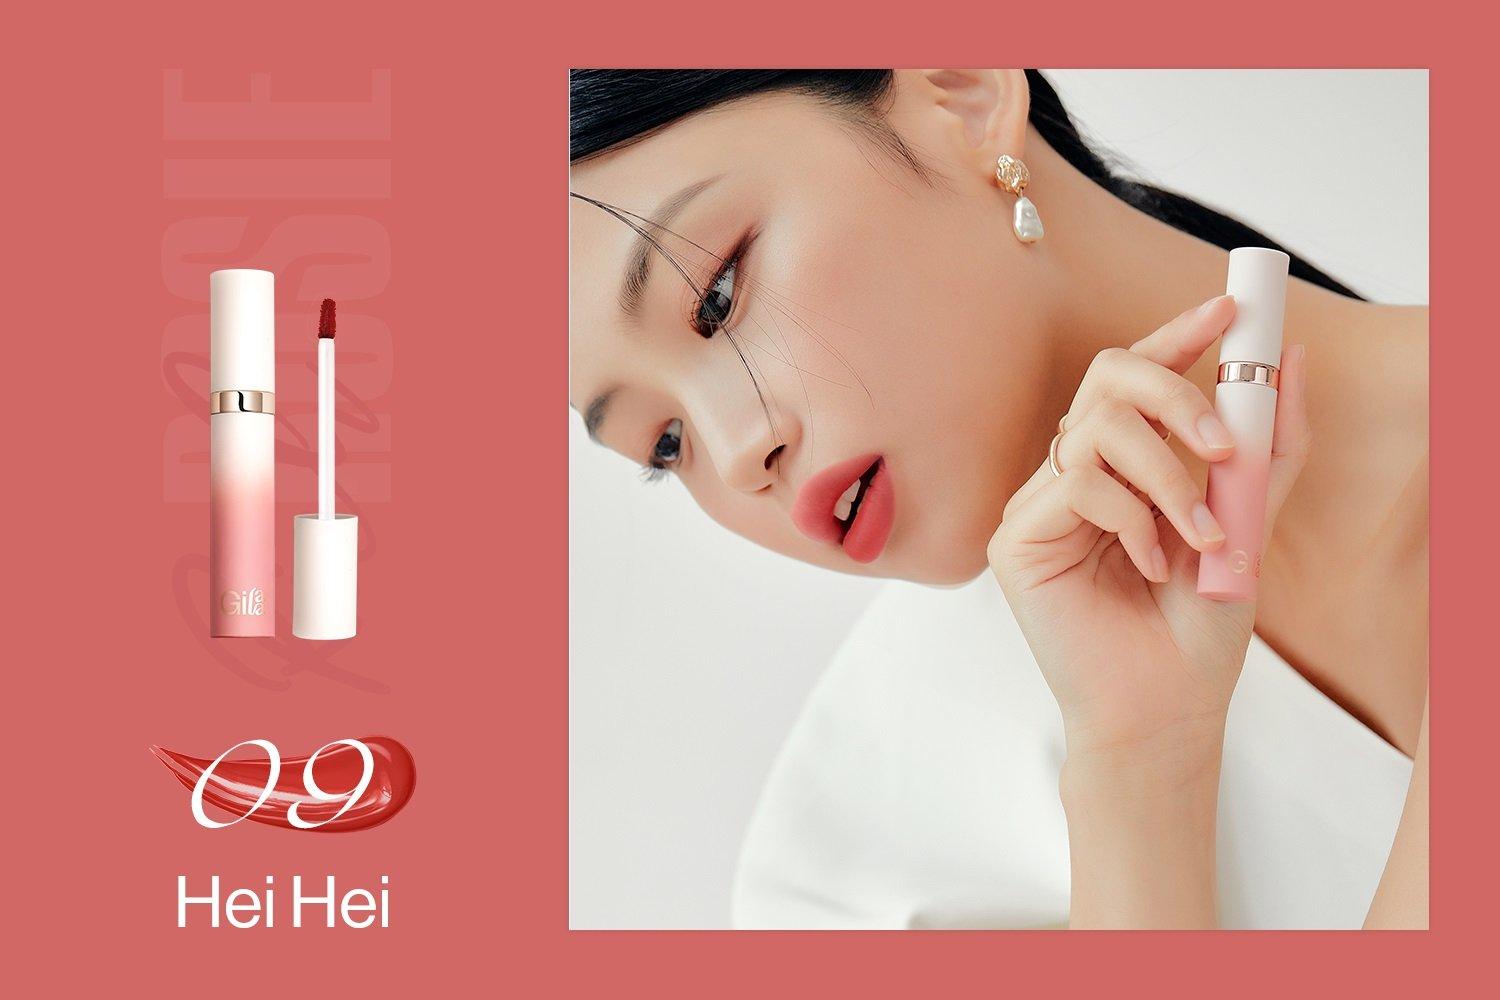 [Màu 8-13] Bộ Sưu Tập Son Kem Lì Gilaa Long Wear Lip Cream (5g) Rich Rosie Collection